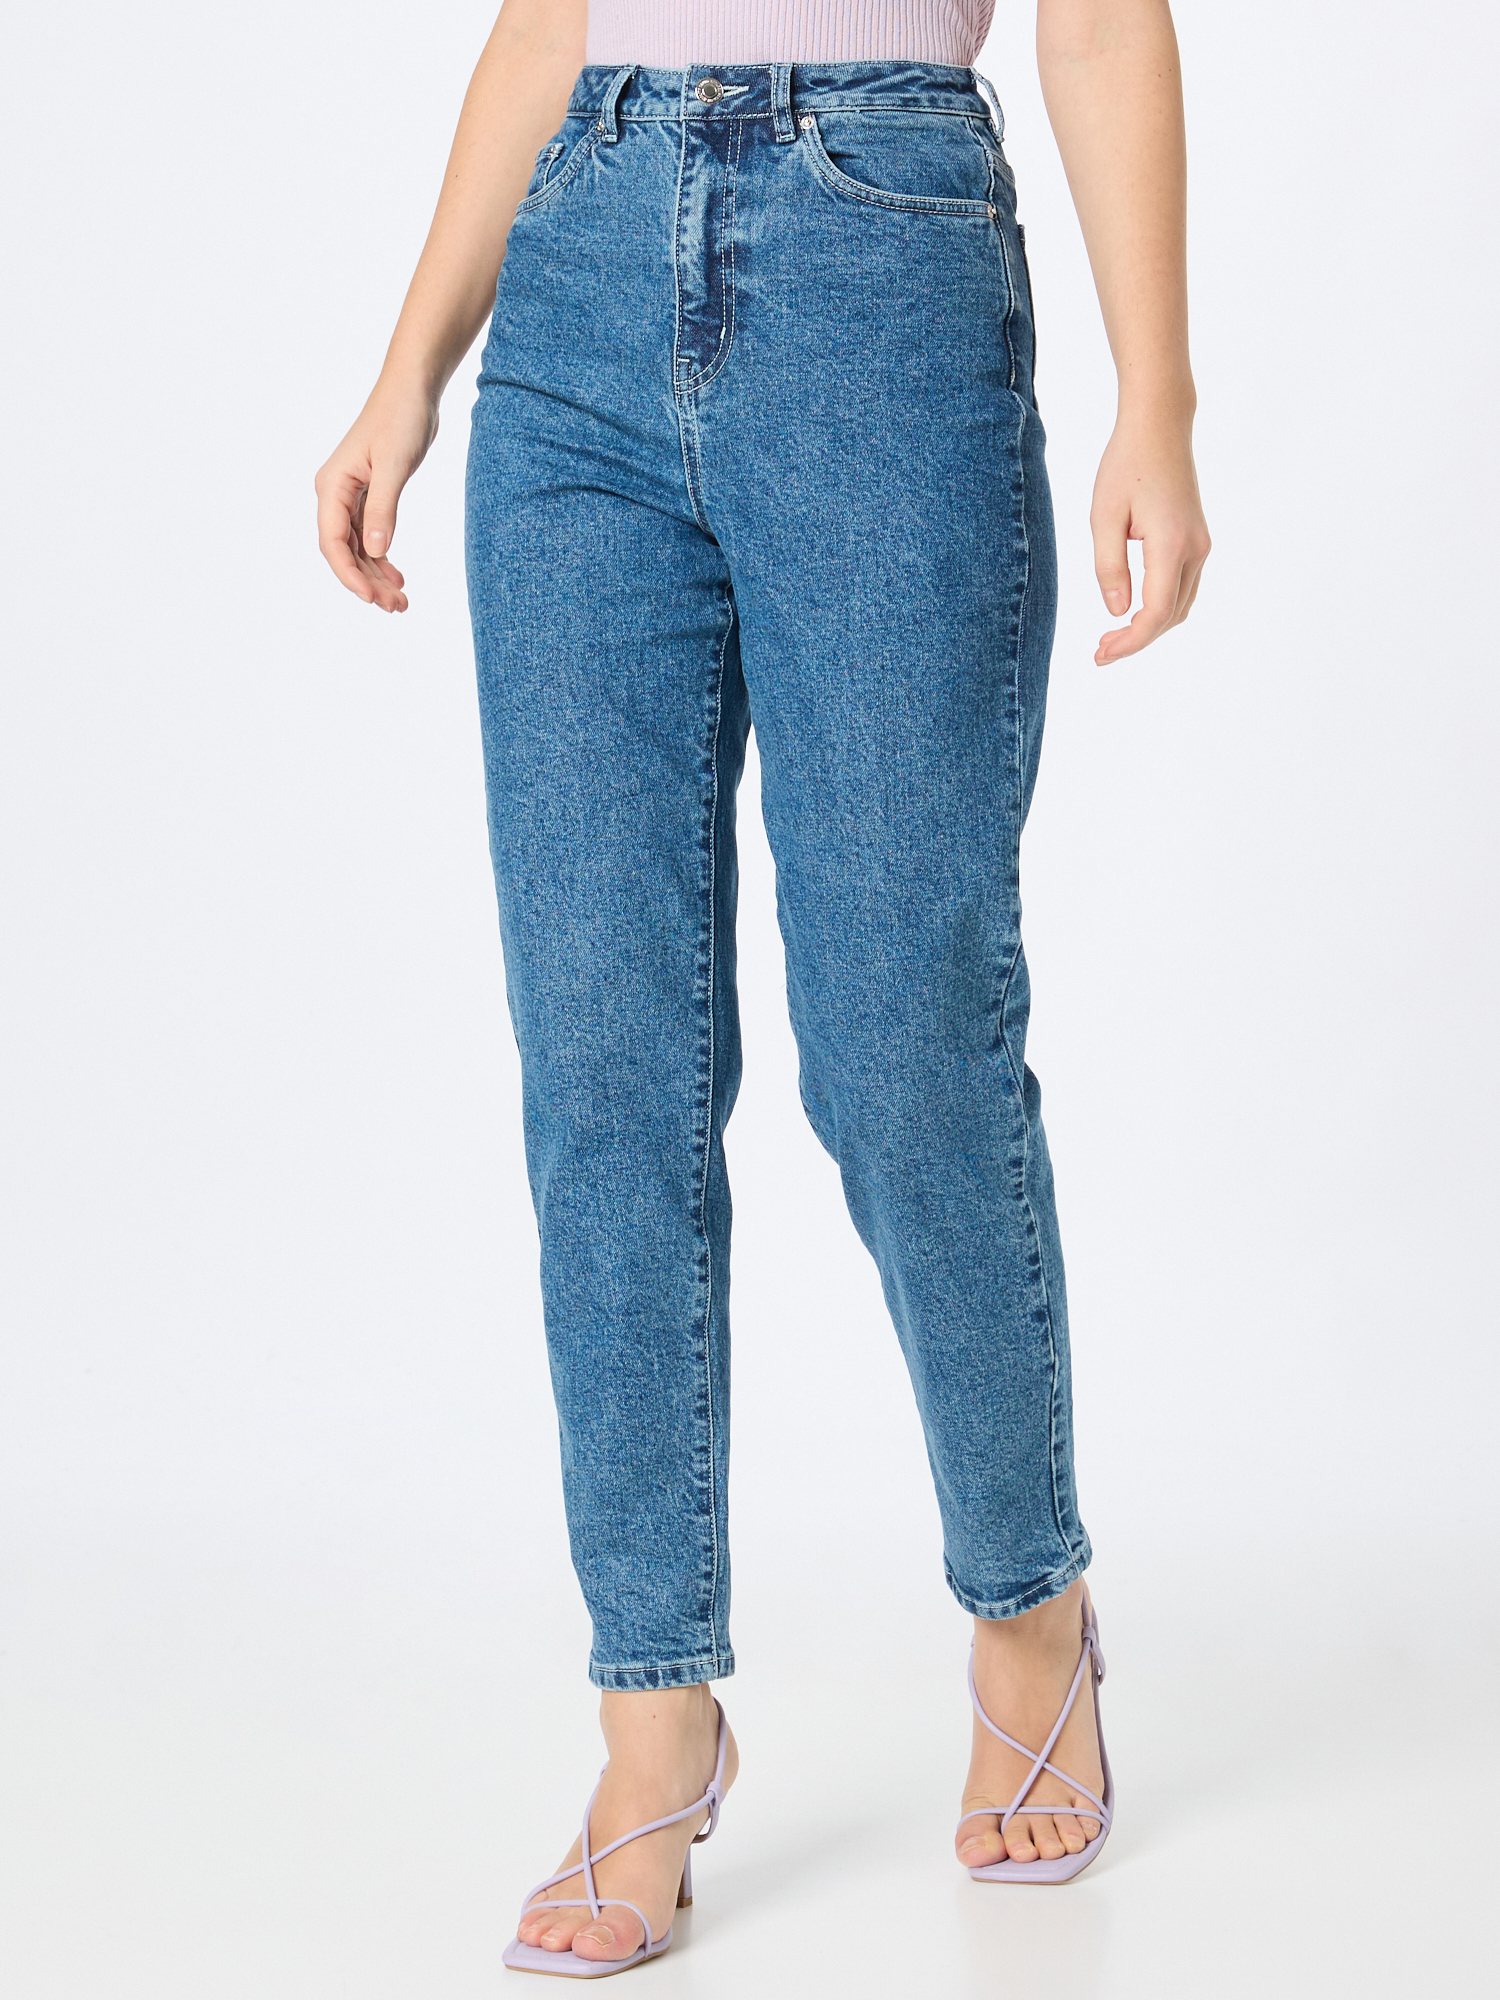 Pantaloni e jeans Donna VERO MODA Jeans ZOE in Blu 